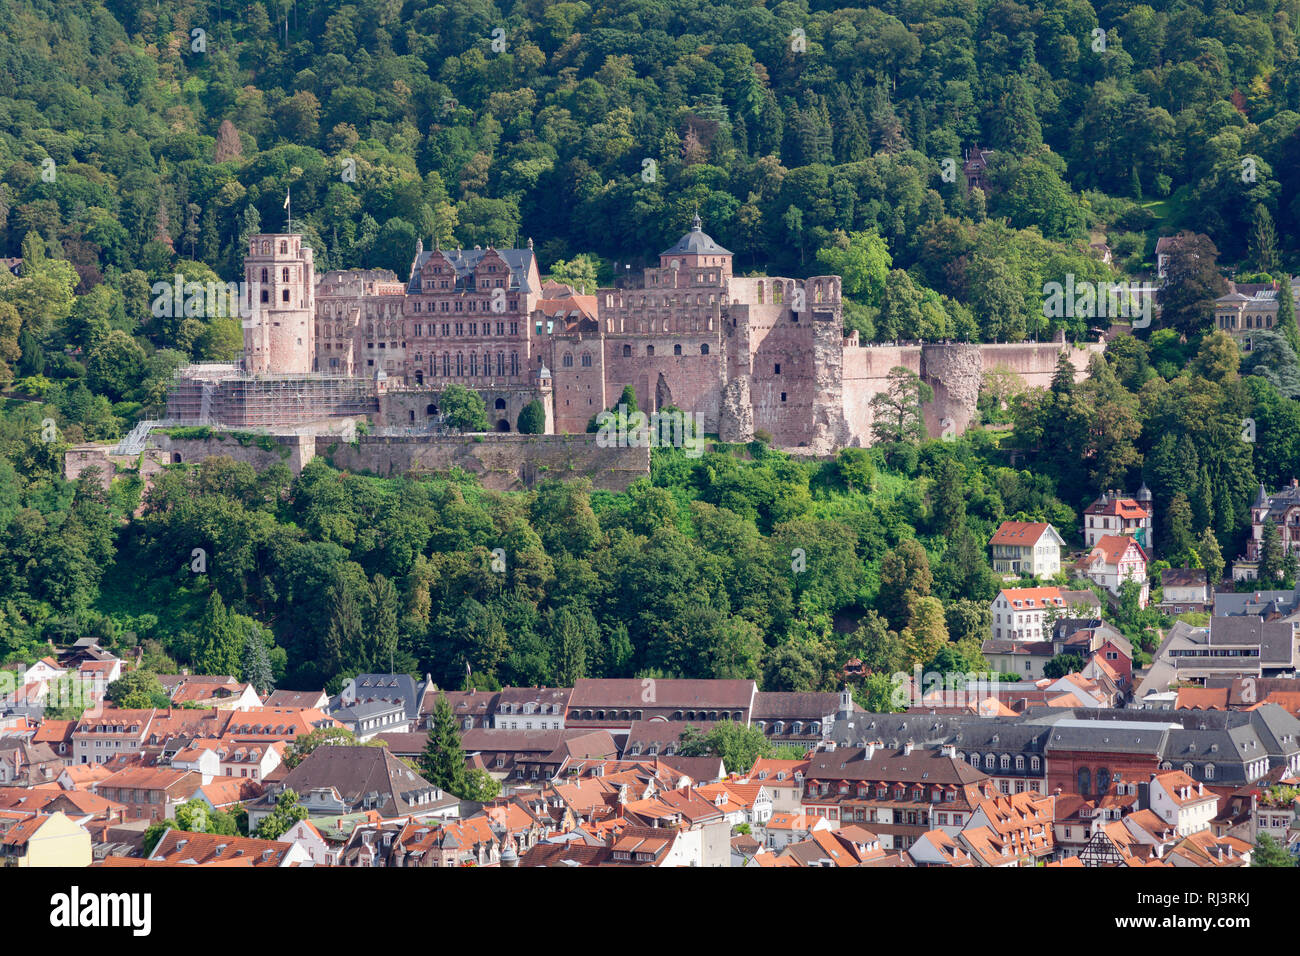 Blick über die Altstadt zum Schloss, Heidelberg, Baden-Württemberg, Deutschland Stock Photo